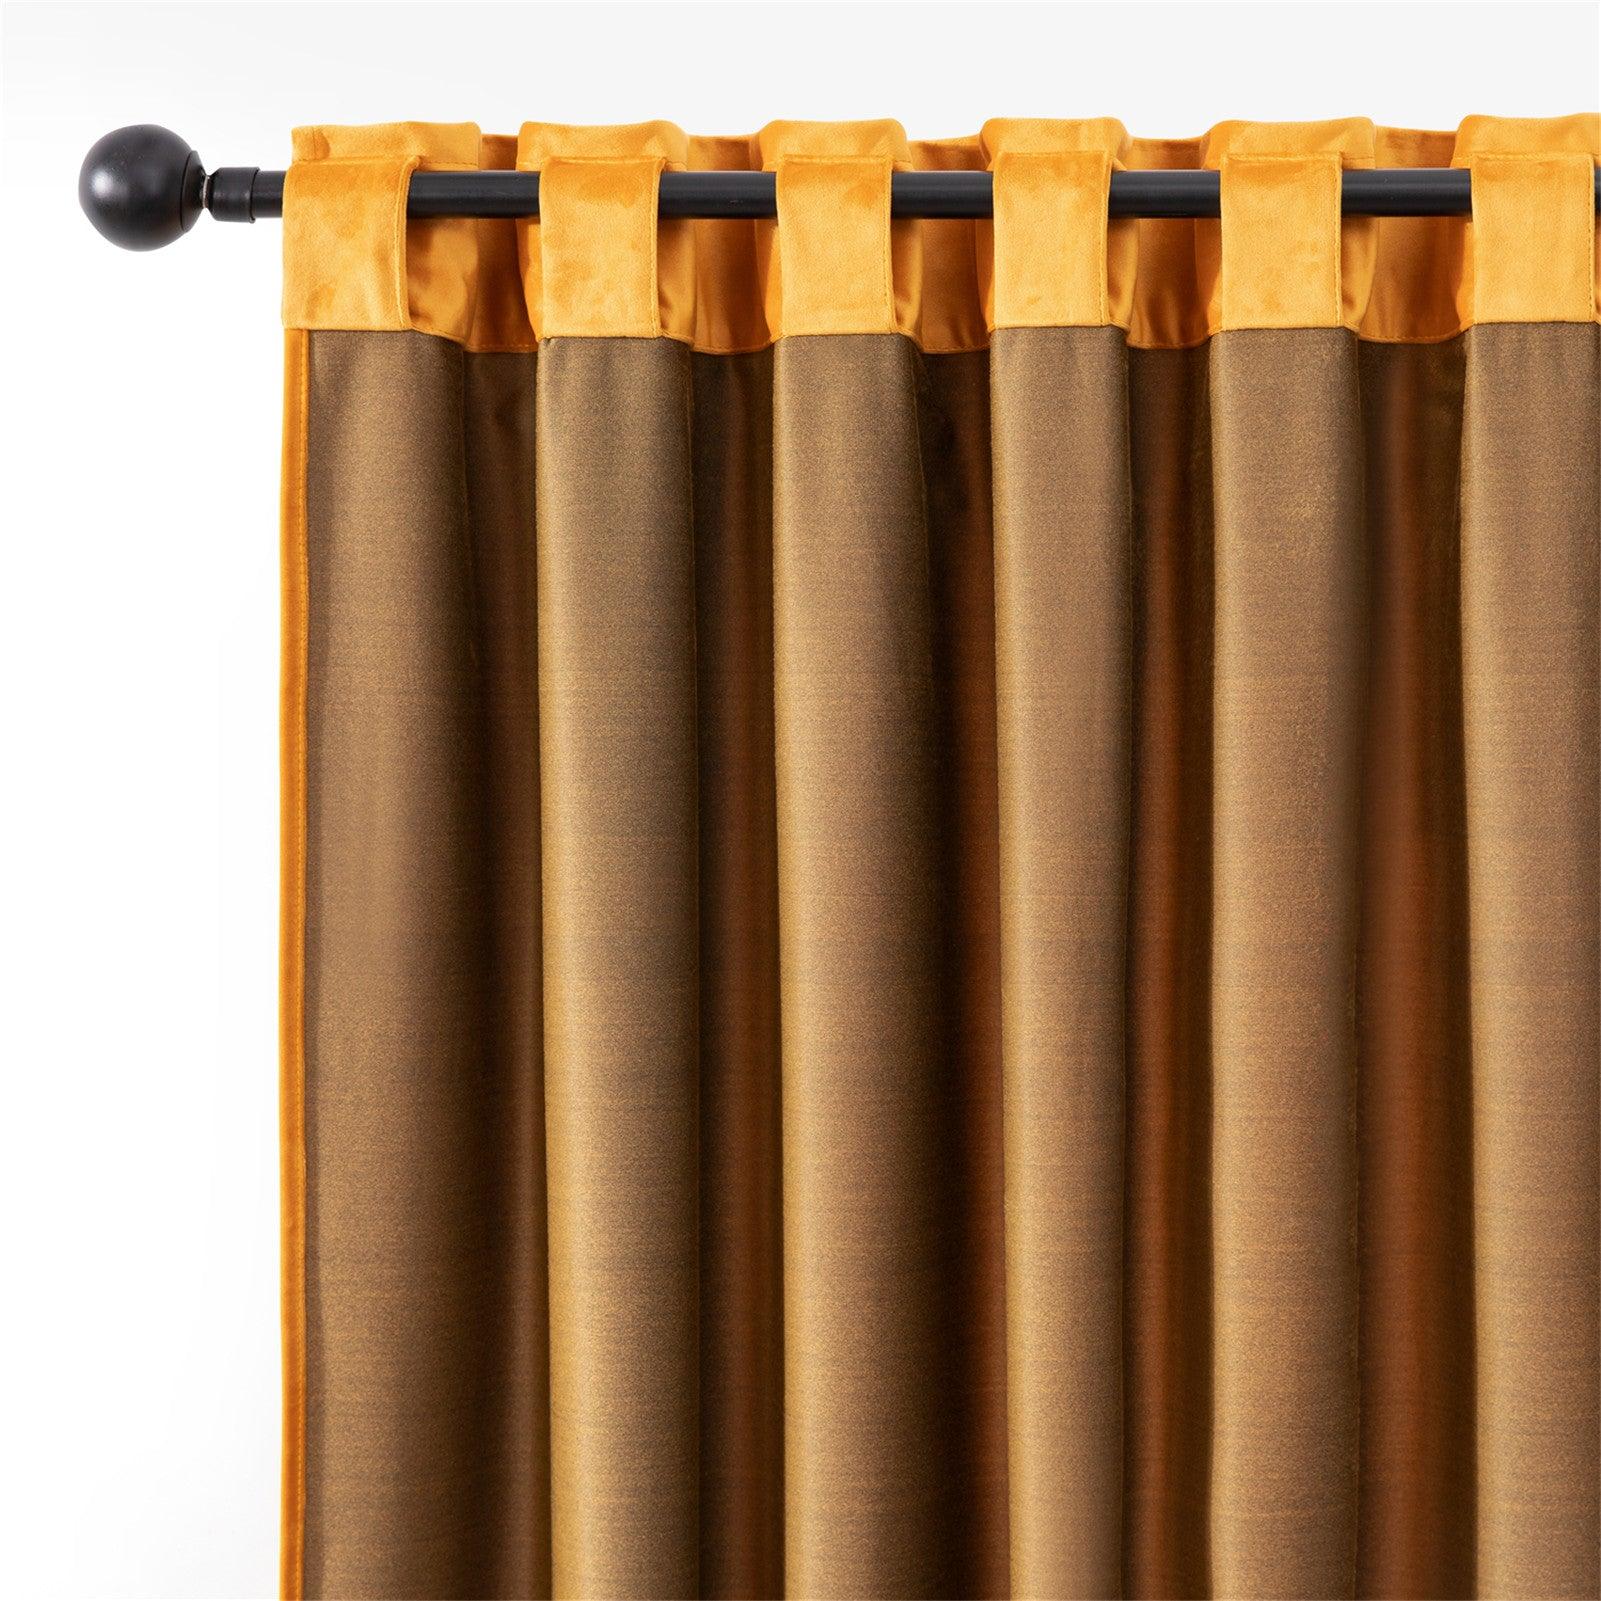 Diy Retro Velvet Curtains- Velvet Thermal Blackout Curtains For Living Room Bedroom,1 Panel - Topfinel